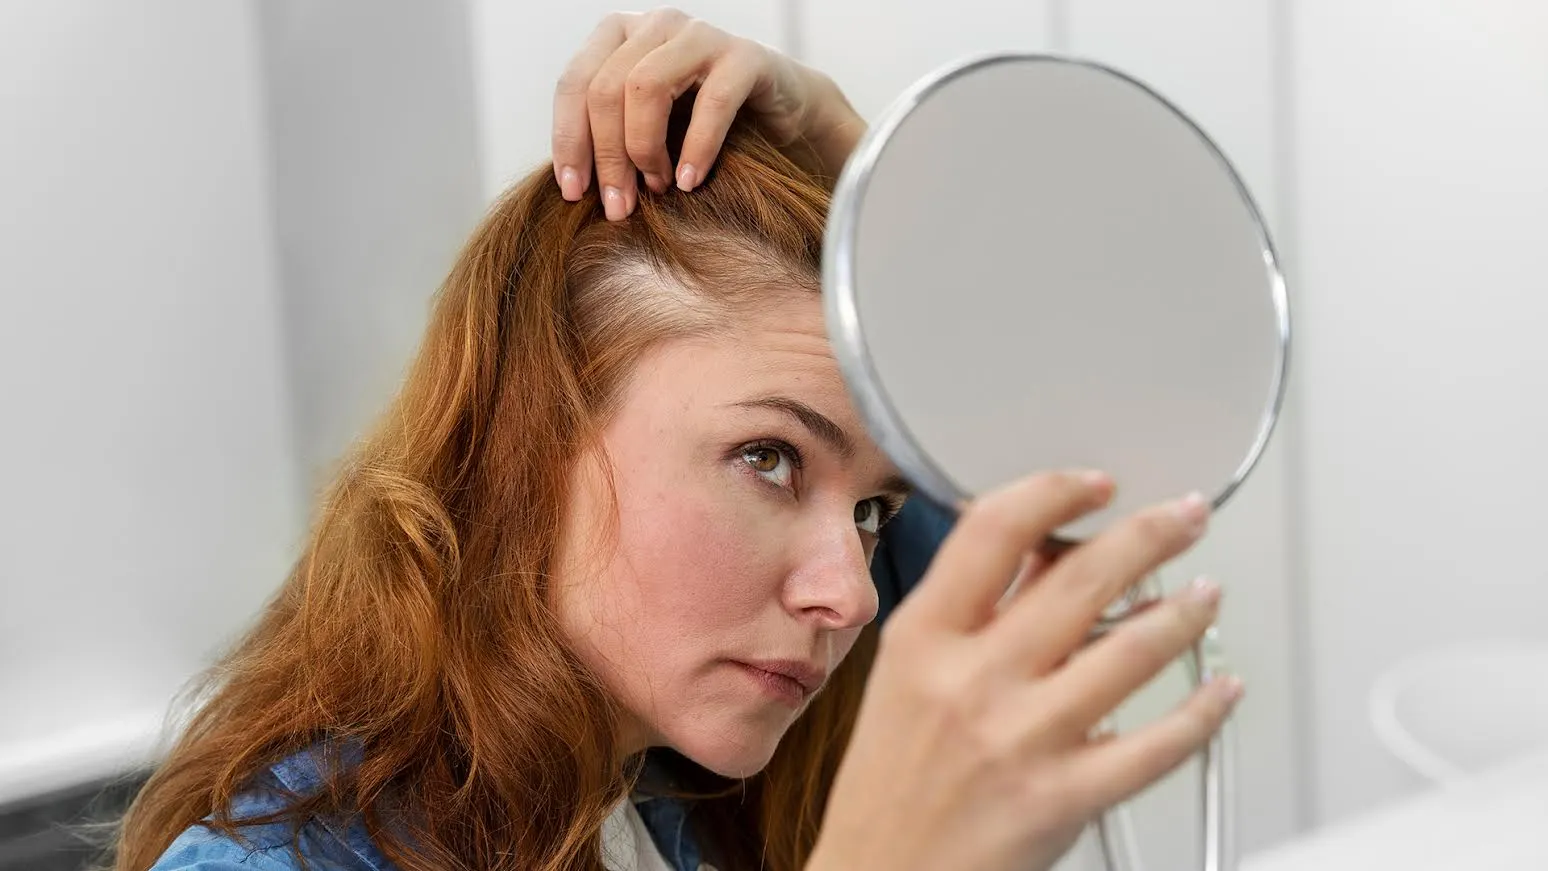 چگونه سرم مناسب موهای خود را انتخاب کنیم؟ سیلیکون اصلی ترین ماده موثر در سرم مو است. طبق تحقیقات انجام شده، سیلیکون ها منحصر به فرد هستند و در بیشتر موارد، جزء اصلی محصولات ضد تعریق هستند. با این حال، باید به خاطر داشته باشید که دانستن سایر موادی که با موهای پرپوز شما مبارزه می کنند، مهم است. به عنوان مثال، اگر موهای بسیار خشک و پرزدار دارید، باید سرم مویی را انتخاب کنید که حاوی روغن هایی مانند روغن کرچک، مومیایی بنفشه یا روغن گل سرخ (نوعی اقاقیا) و روغن مارولا (روغنی سرشار از برخی ویتامین ها و مواد معدنی ضروری باشد). ) .مانند ویتامین C، ویتامین E و سایر ترکیبات آلی) برای تامین آبرسانی قوی به مو و براق و درخشندگی آن. سرم های مناسب برای انواع مو سرم های مناسبی برای انواع مو و اهداف خاص وجود دارد. در اینجا راهنمای انتخاب سرم مناسب برای موهایتان است. سرم های مناسب برای موهای پرپوز فر کردن تارهای مو را مستعد شکستن و فرسایش می کند. اگر موخوره شدید دارید، استفاده از سرم مو برای بهبود ظاهر موهای شما ضروری است.با این حال، مطمئن شوید که سرم های حاوی کراتین را انتخاب می کنید. زیرا کراتین برای ترمیم فرهای مزاحم و جلوگیری از شکاف انتهایی مفید است. سرم های مناسب برای محافظت در برابر گرما و آلودگی اگر در آب و هوای گرم و مرطوب یا مناطق بادخیز زندگی می کنید یا به طور مرتب در معرض آفتاب هستید، باید مراقبت بیشتری از موهای خود داشته باشید. سرم های موی حاوی روغن اسطوخودوس و روغن جوجوبا (مرطوب کننده و تقویت کننده قوی) را انتخاب کنید. زیرا این روغن ها به طور موثر موها را تغذیه و تقویت می کنند و به آن درخشندگی و درخشندگی خاصی می بخشند. روغن اسطوخودوس موهای شما را نرم و باز می کند. همچنین می تواند از مو در برابر گرما محافظت کند. علاوه بر این، چنین سرم هایی روی موها بسیار سبک هستند و به سرعت جذب می شوند. سرم مخصوص موهای خشک موهایی که خیلی خشک هستند نیاز به تغذیه و مراقبت بیشتری دارند. خبر خوب این است که اکنون سرم هایی وجود دارد که می توانند در شب برای احیای موهای شما در هنگام خواب استفاده شوند. اطمینان حاصل کنید که این سرم‌ها بر پایه کرم هستند، نه روغنی، و به جای سنگین کردن موهایتان، آن‌ها را هیدراته می‌کنند.اگر موهای خشک خود را آبرسانی کنید و از سرم های شب استفاده کنید، صبح با موهایی براق و مغذی از خواب بیدار خواهید شد.